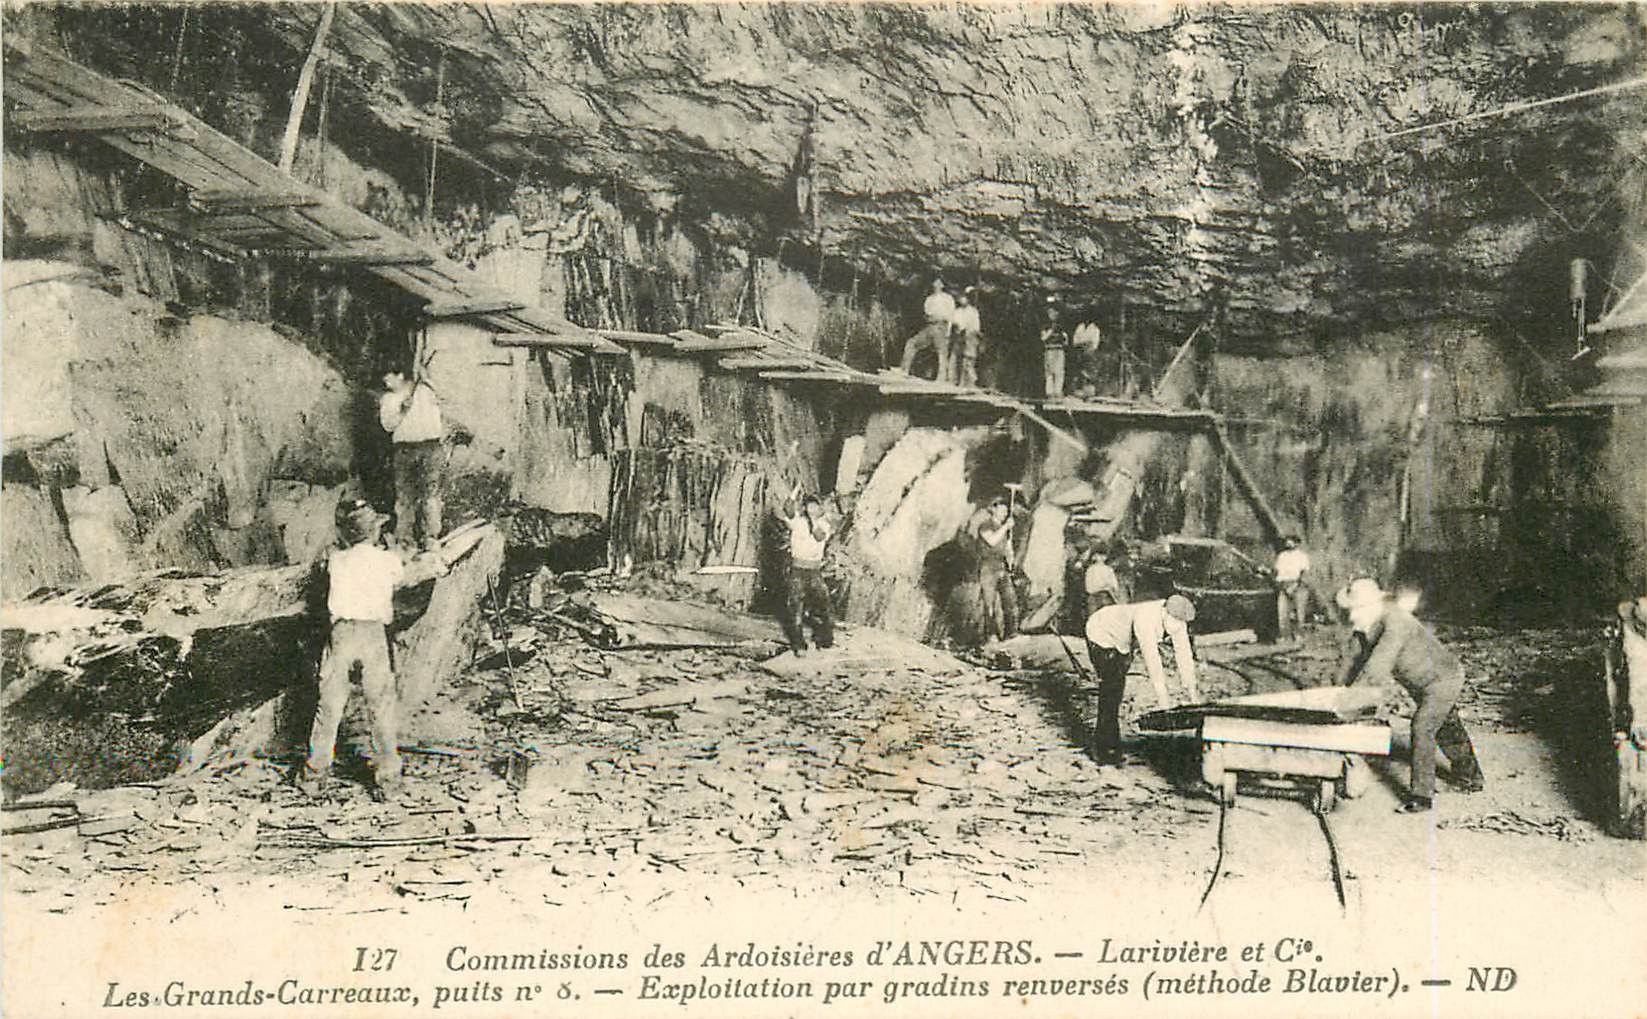 WW 49 ANGERS. Commissions des Ardoisières Larivière Les-Grands-Carreaux